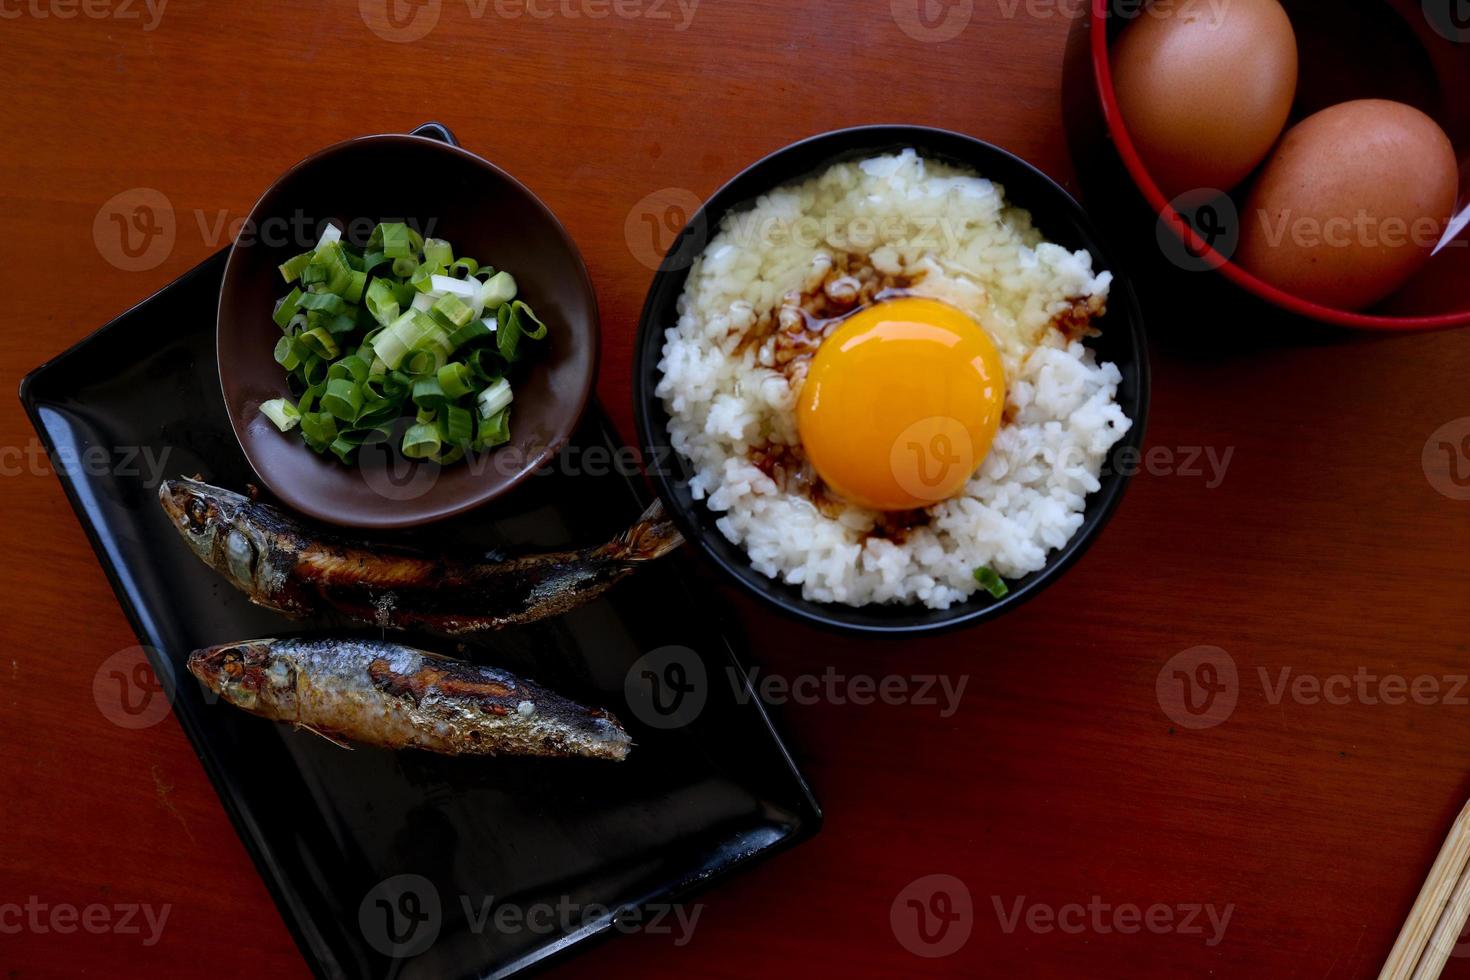 tamago kake gohan o huevo crudo sobre arroz. comida tradicional de japón, comer en el desayuno foto